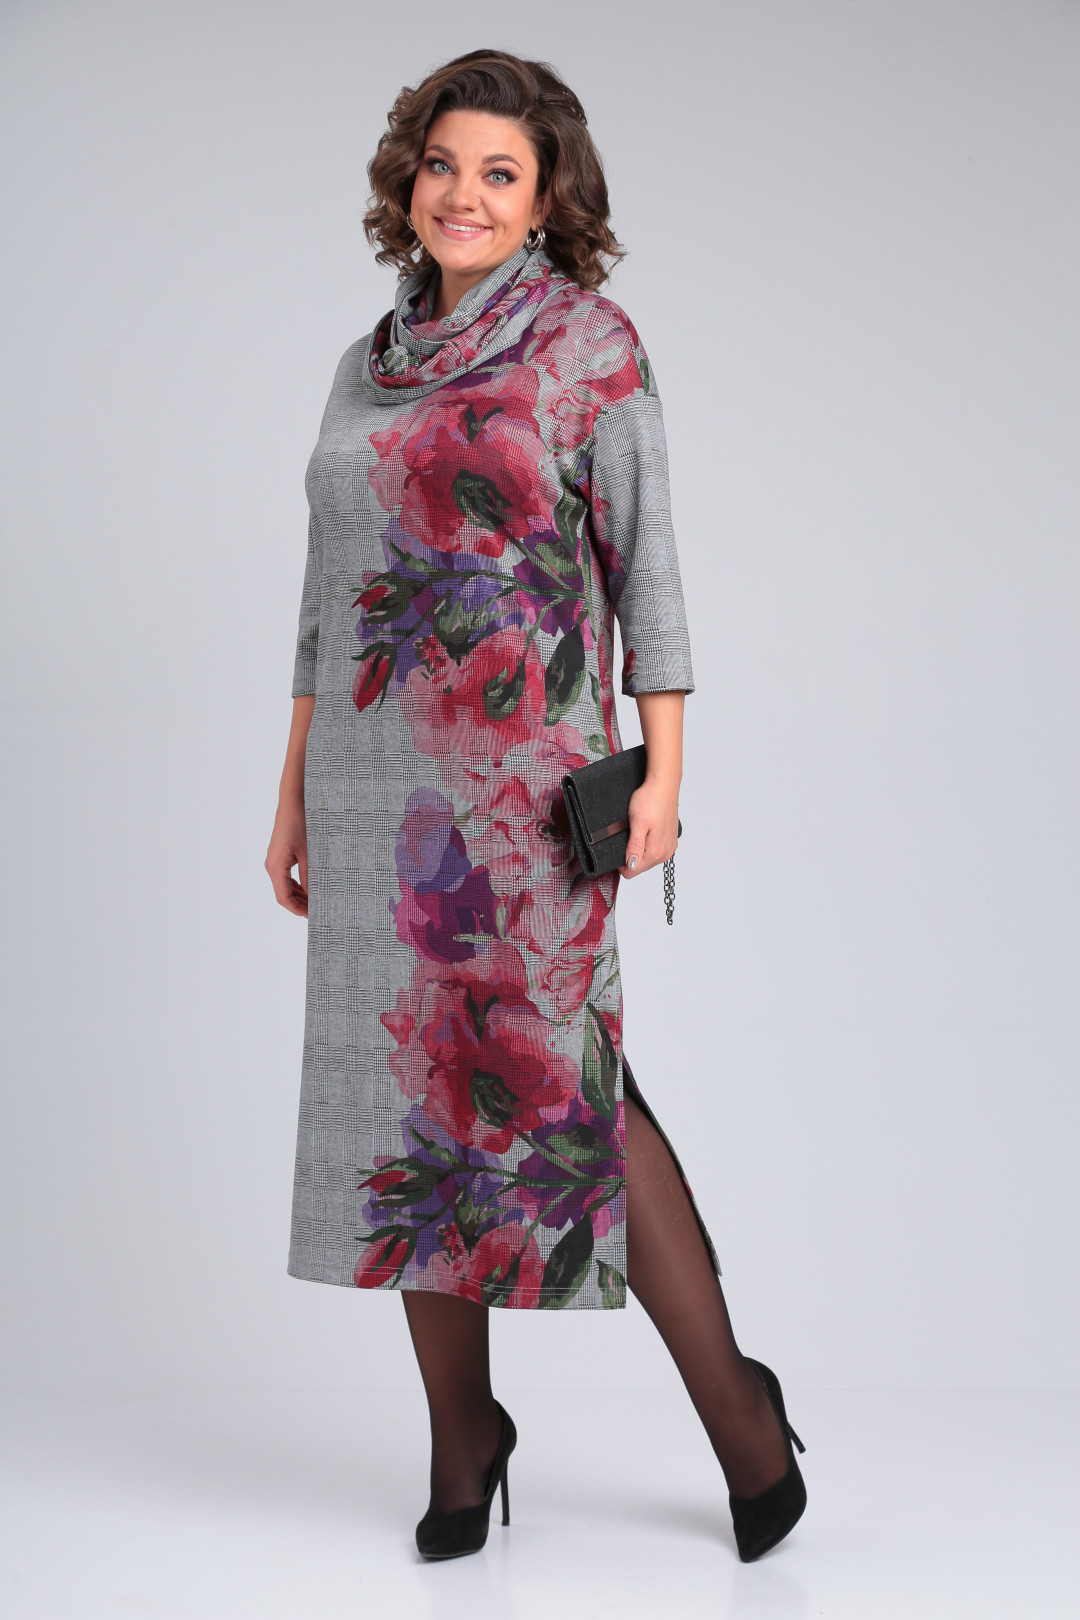 Платье Мишель Шик 2152 серый, лиловая роза